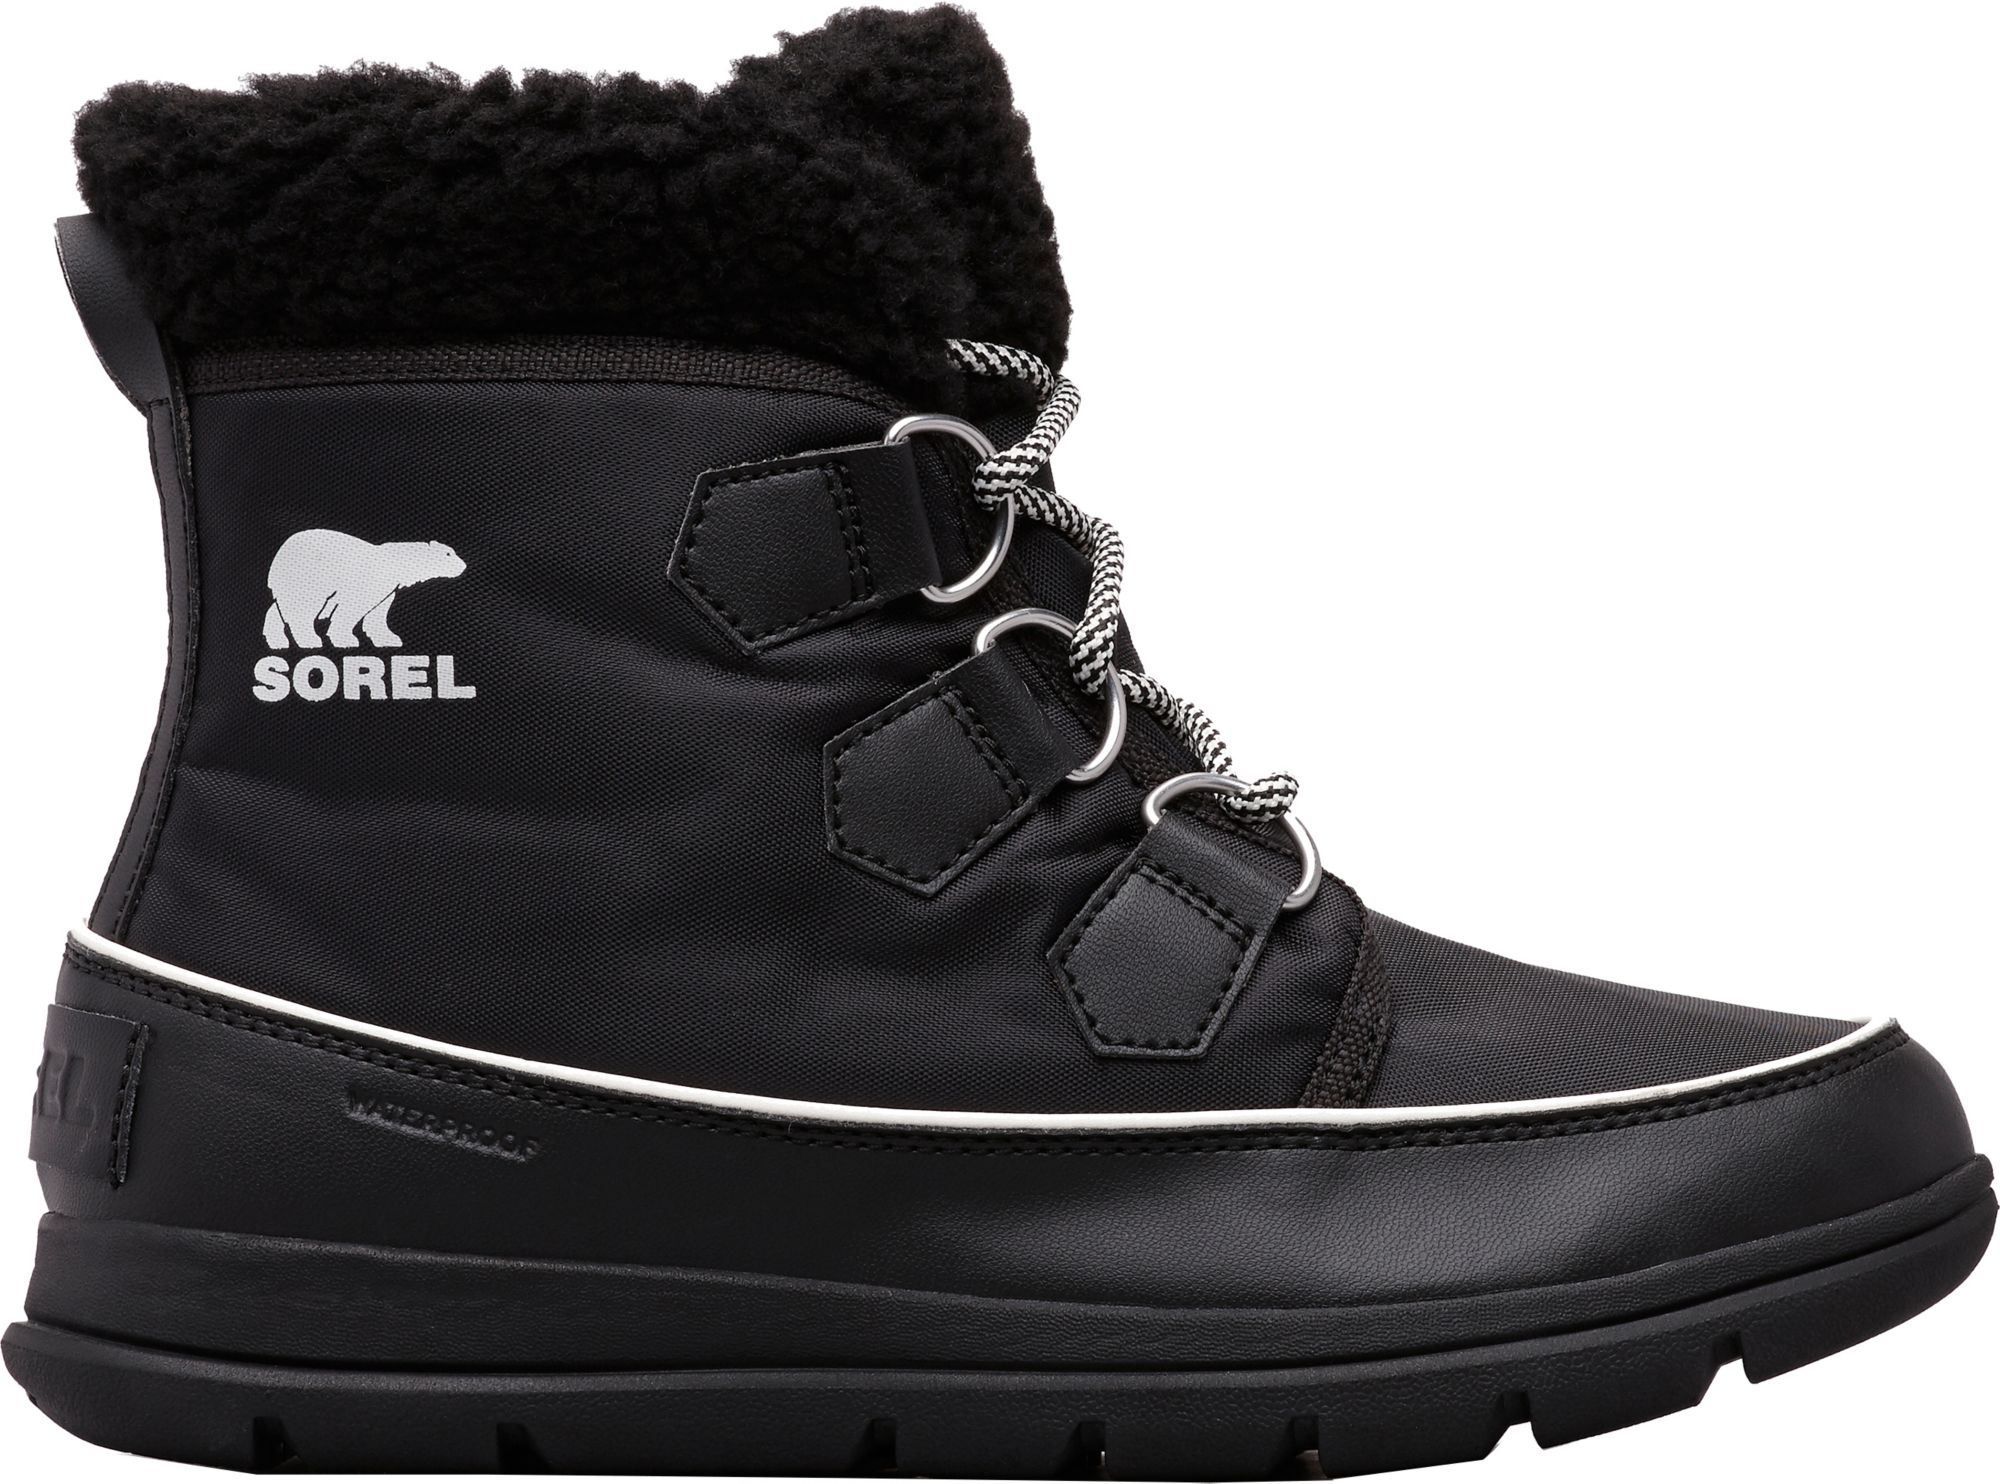 sorel explorer carnival waterproof boot